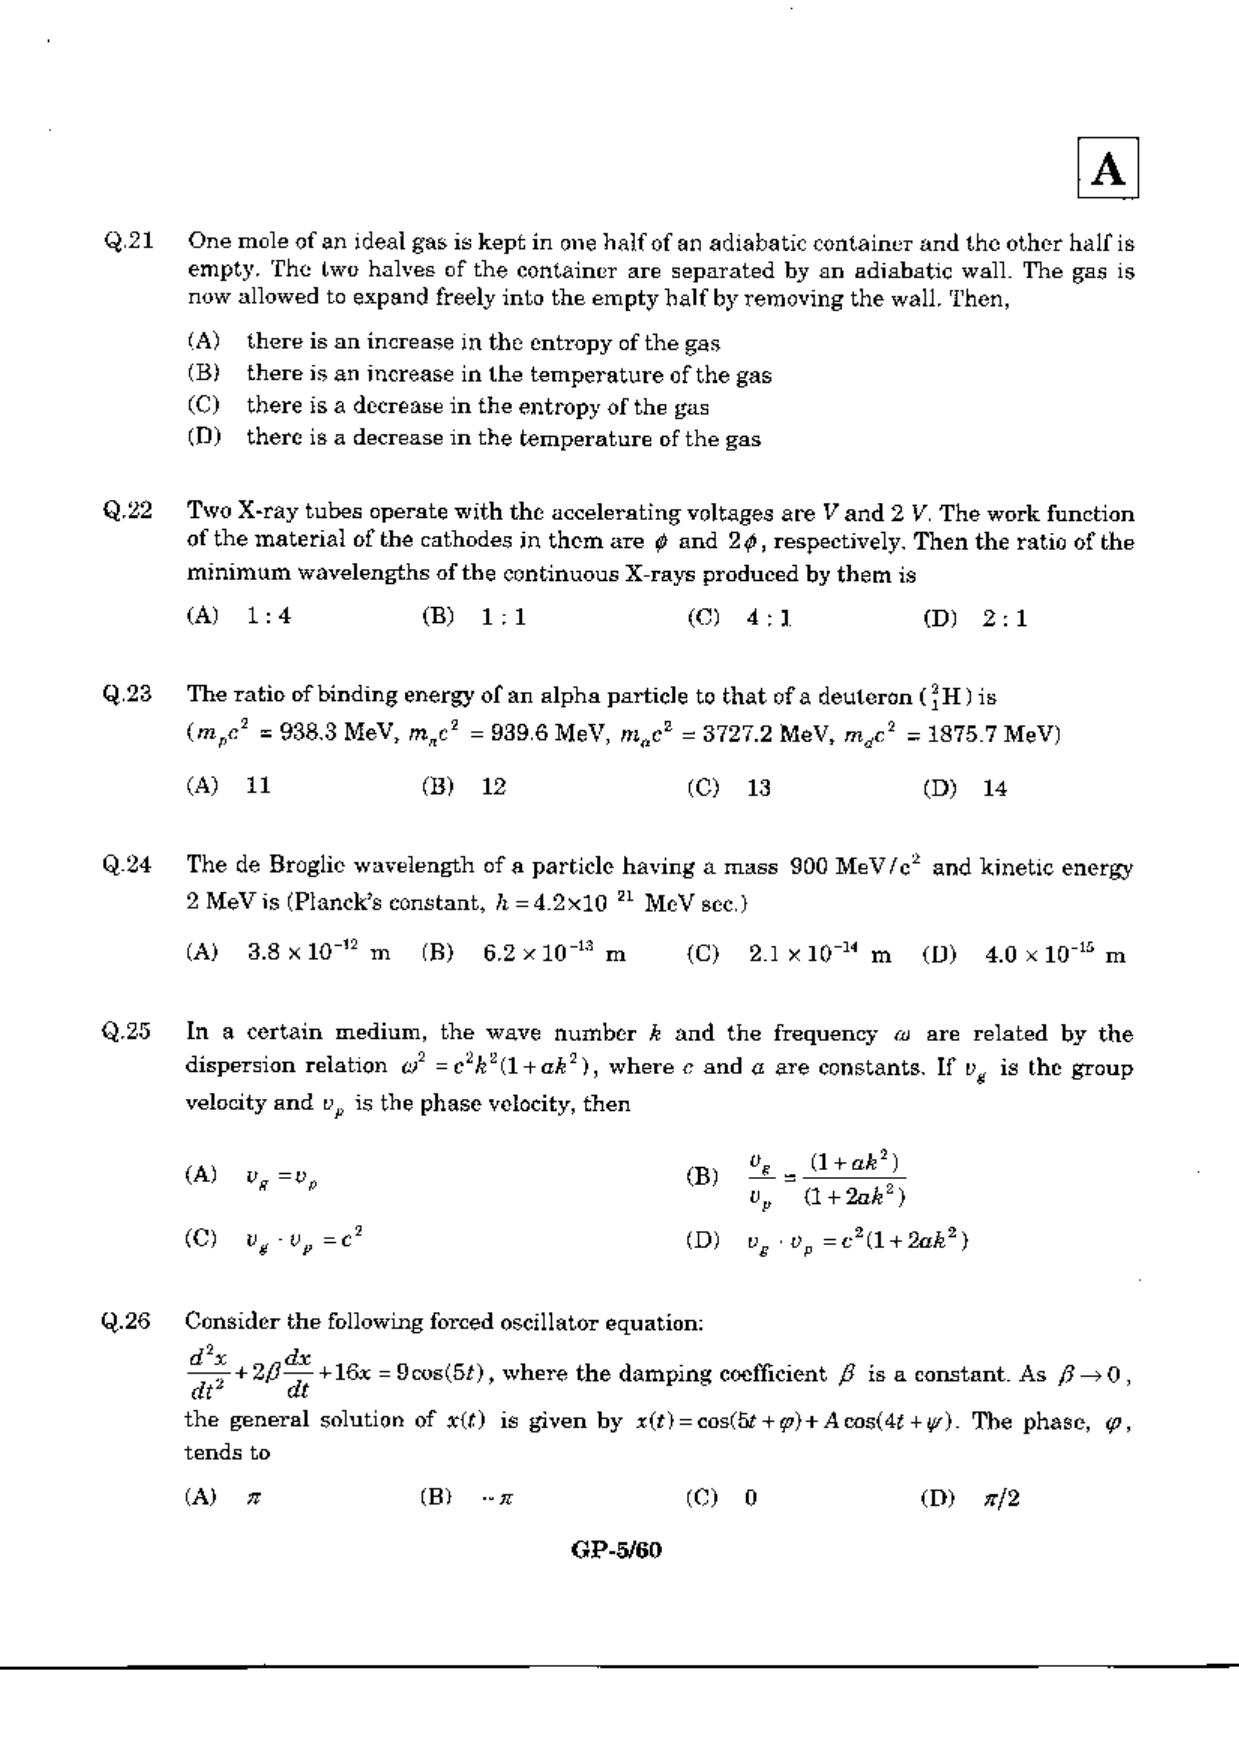 JAM 2010: GP Question Paper - Page 7